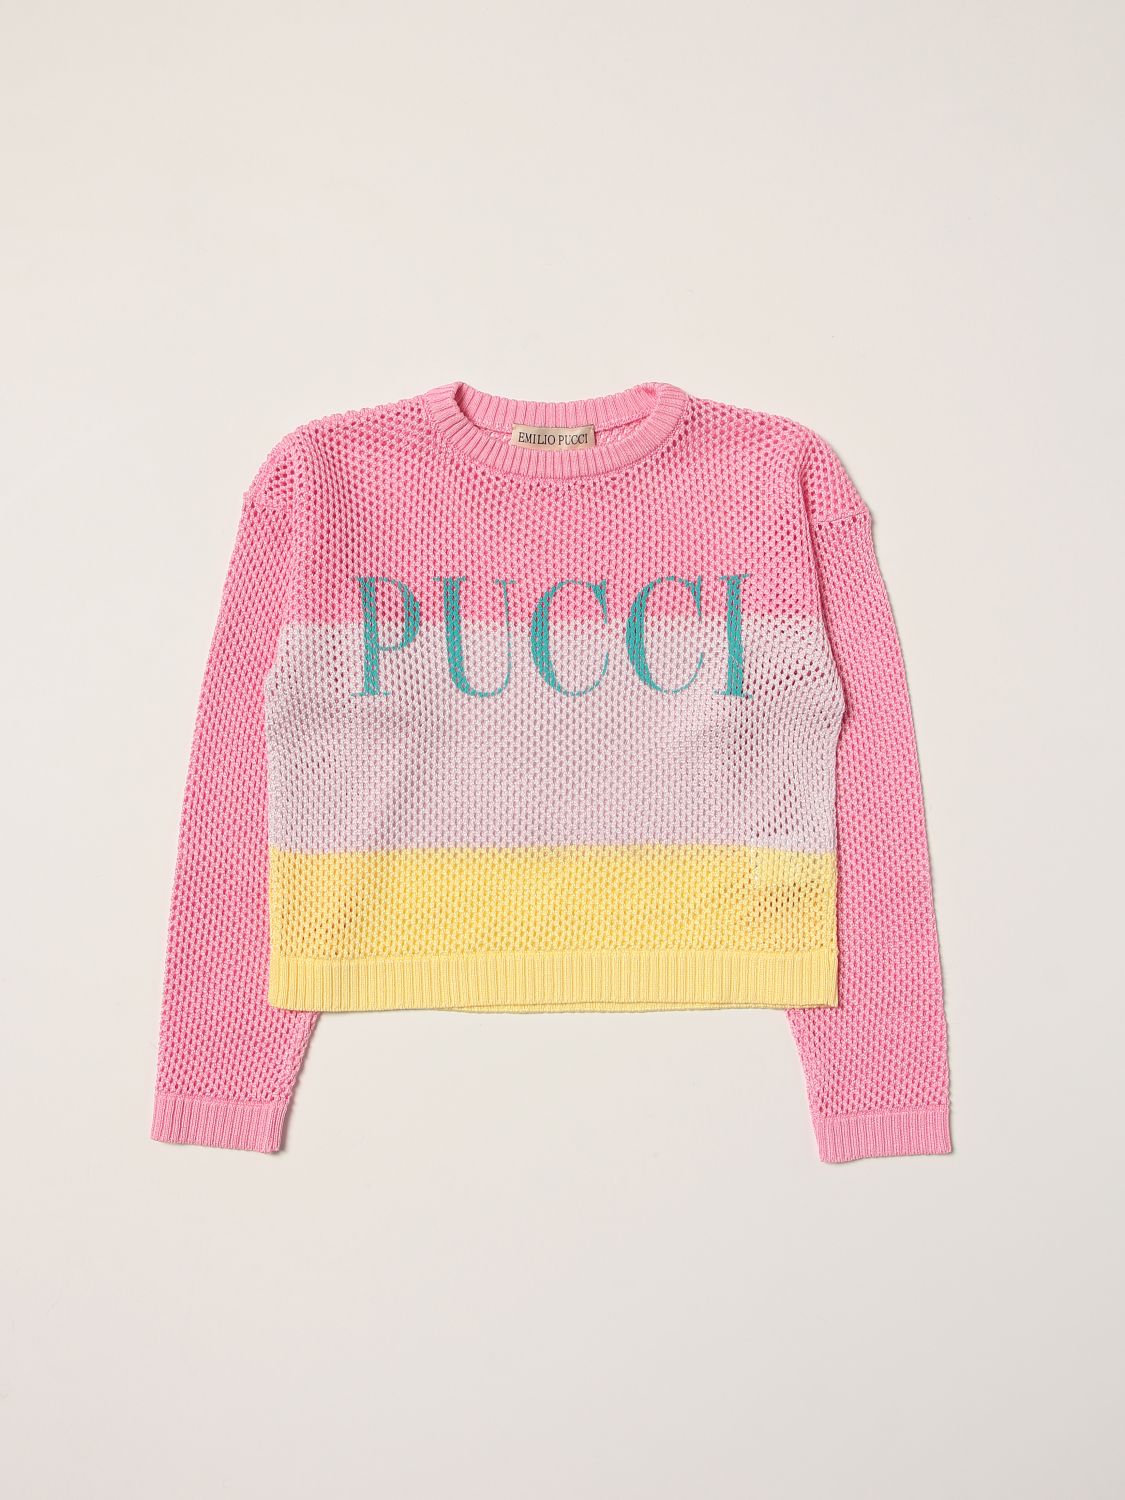 Emilio Pucci Emilio Pucci tricolor jumper with logo